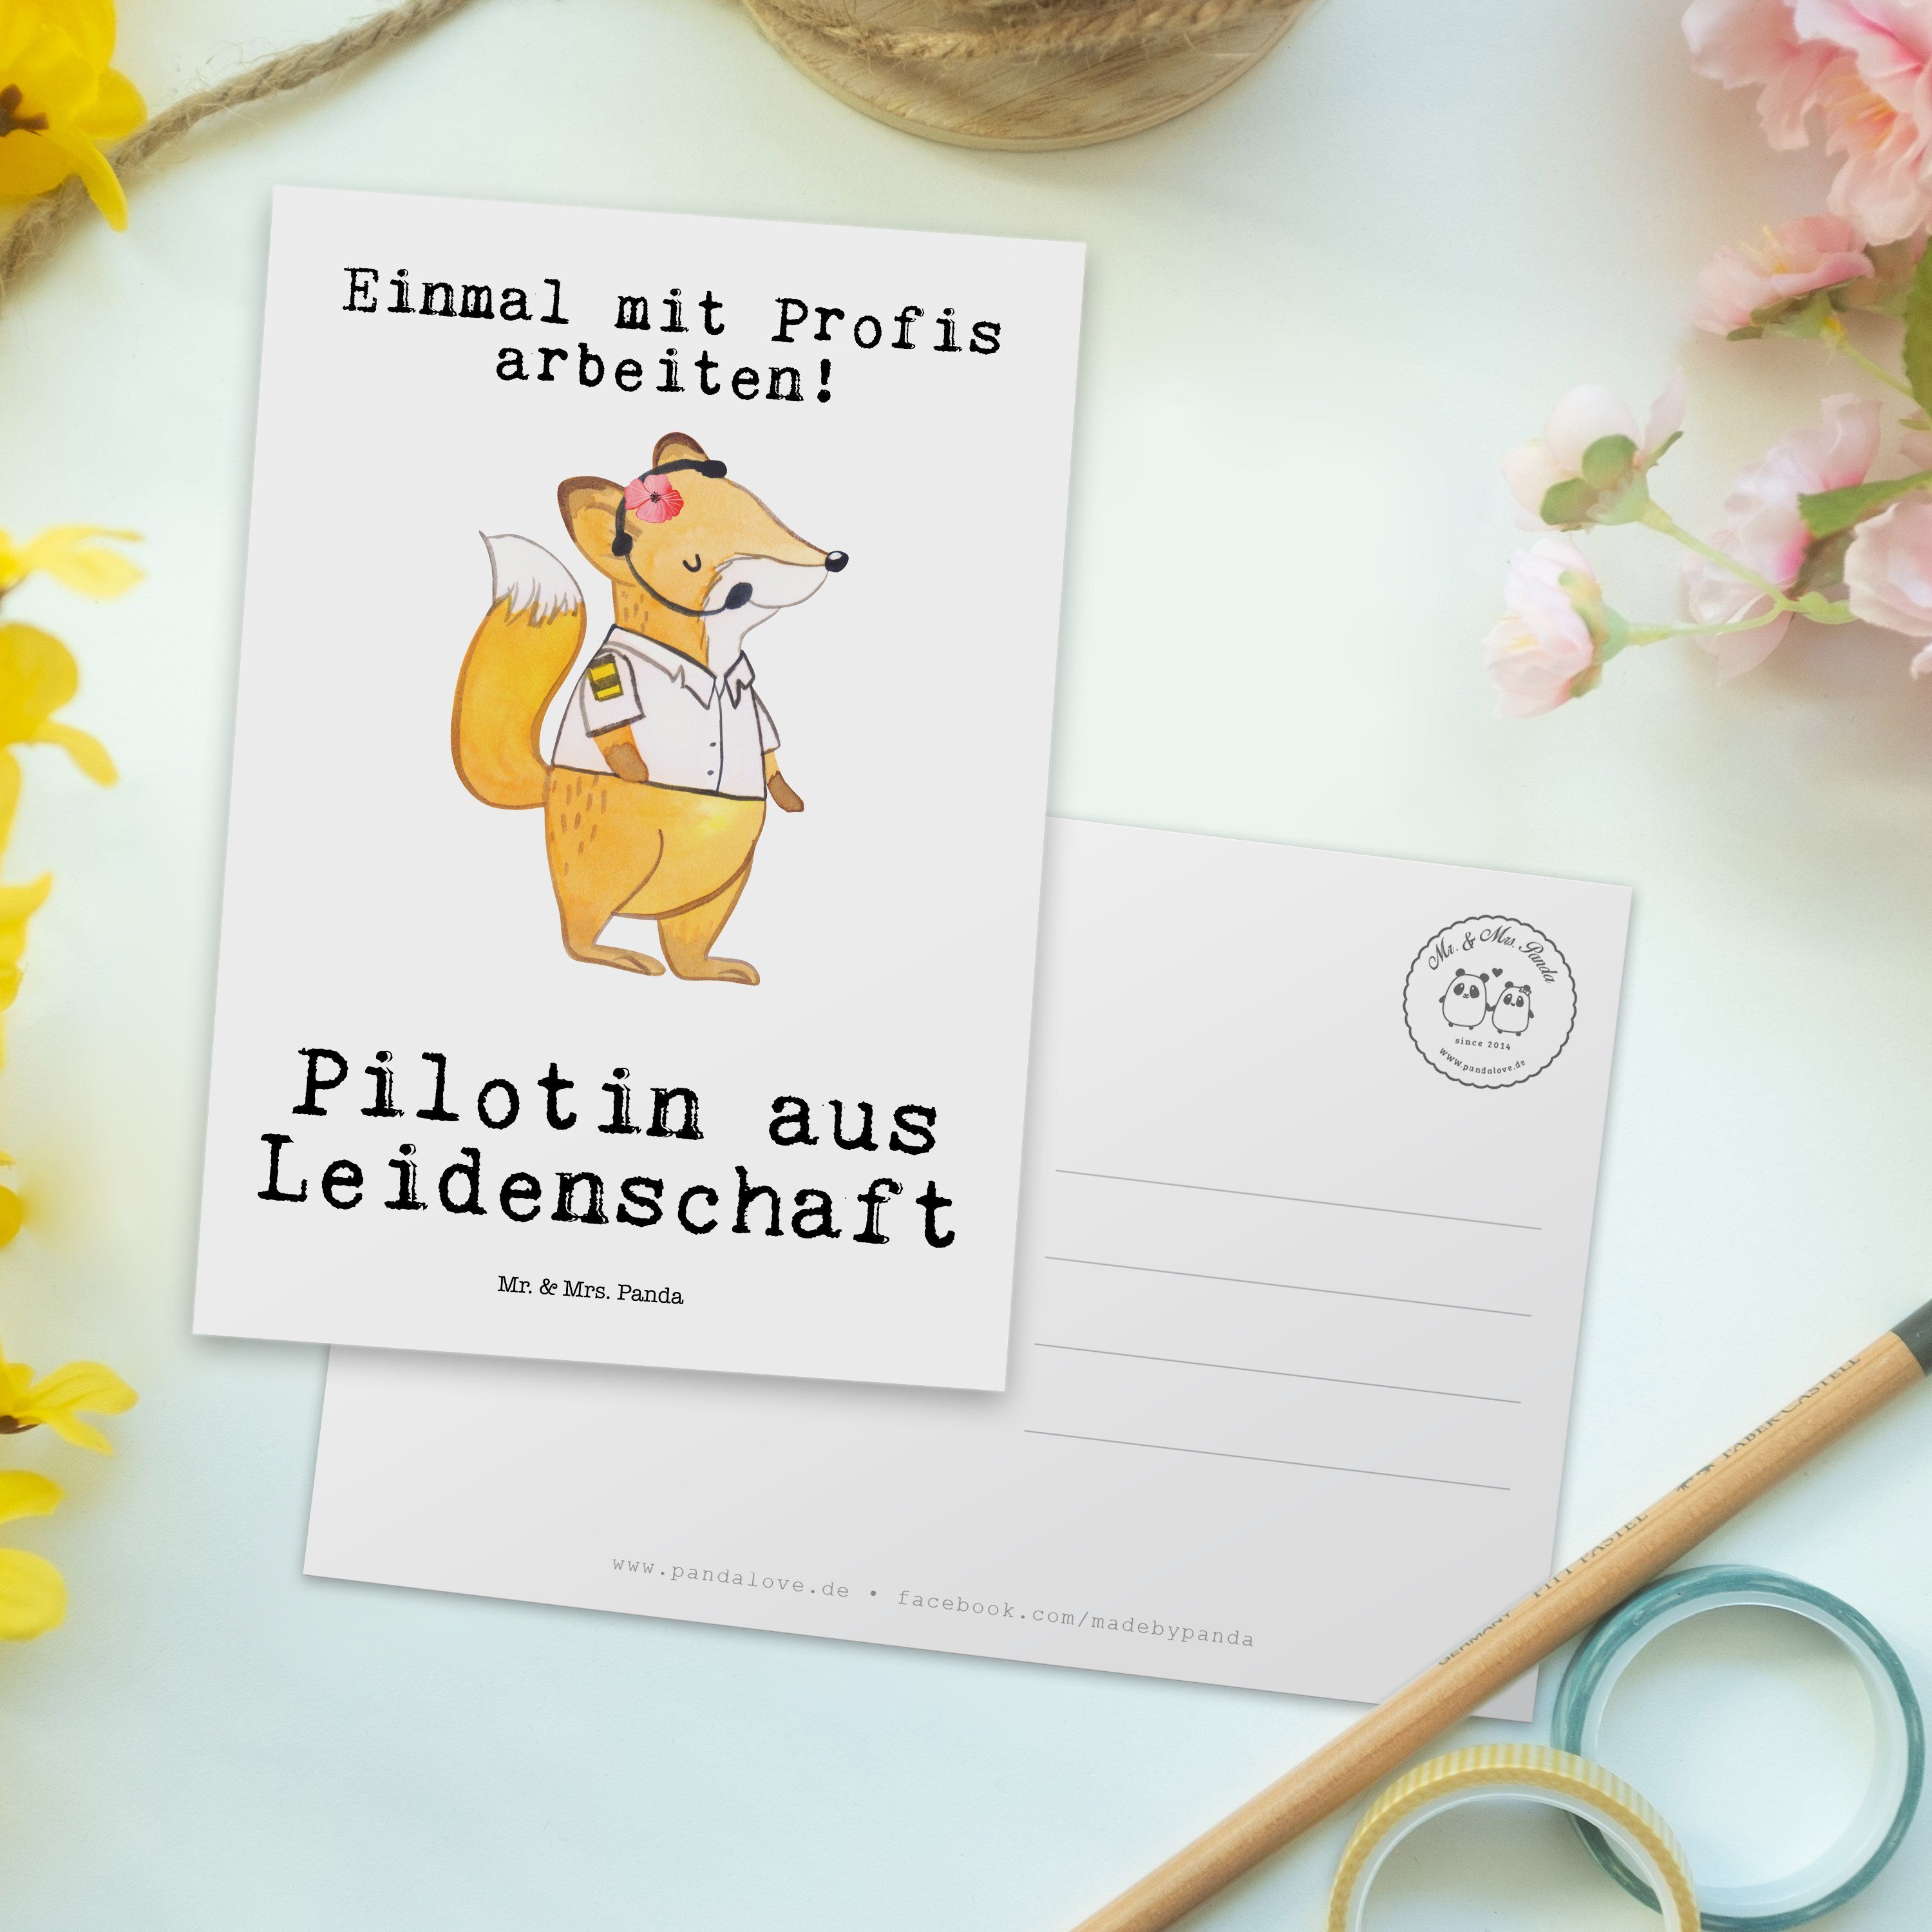 Mr. & Mrs. Panda aus - Moderation, Leidenschaft Weiß Pilotin - Geschenk, Karte, Postkarte Gesche